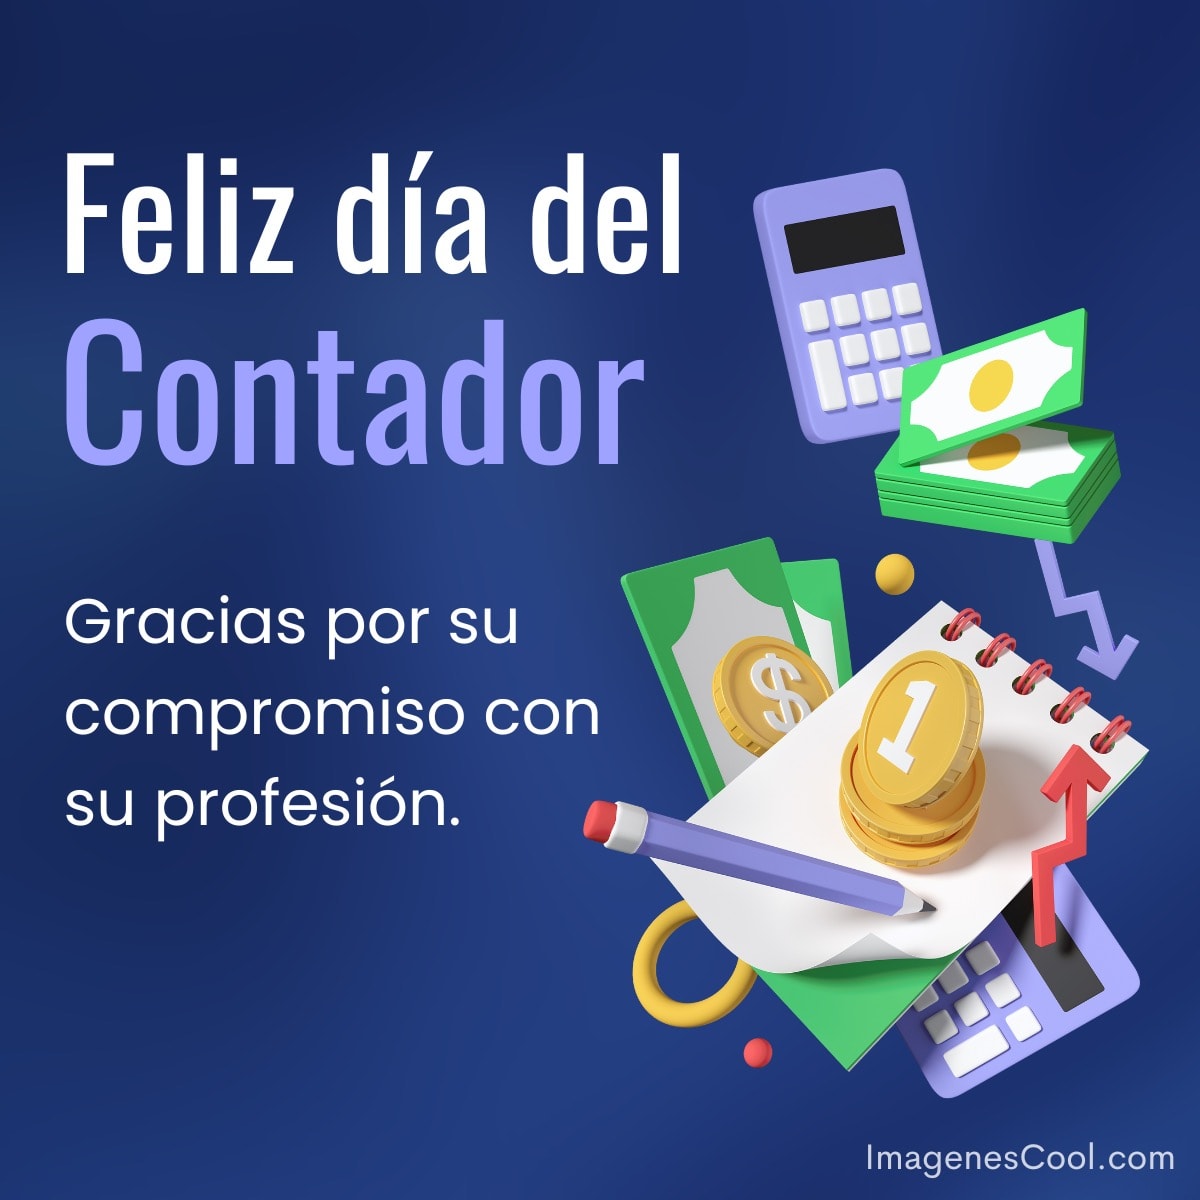 Felicitación por el Día del Contador con elementos de finanzas y agradecimiento